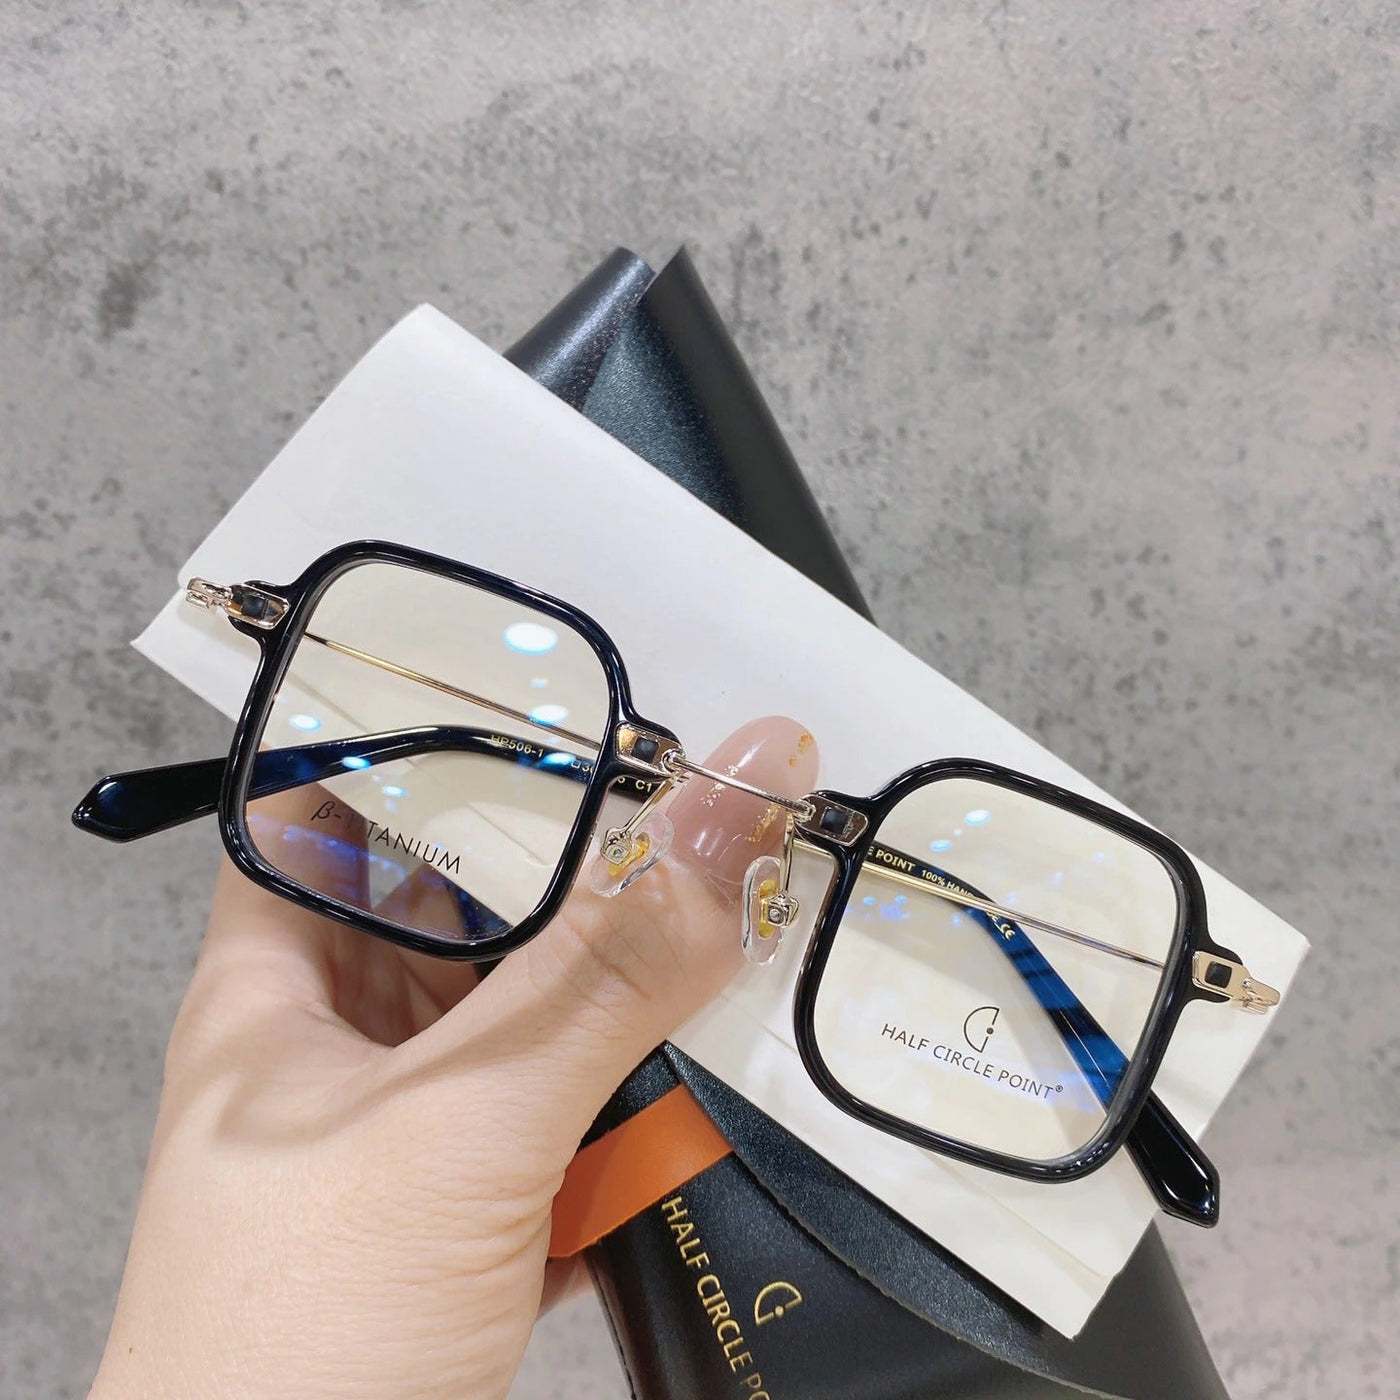 Retro Square Titanium Glasses Frame For Unisex-Unique and Classy